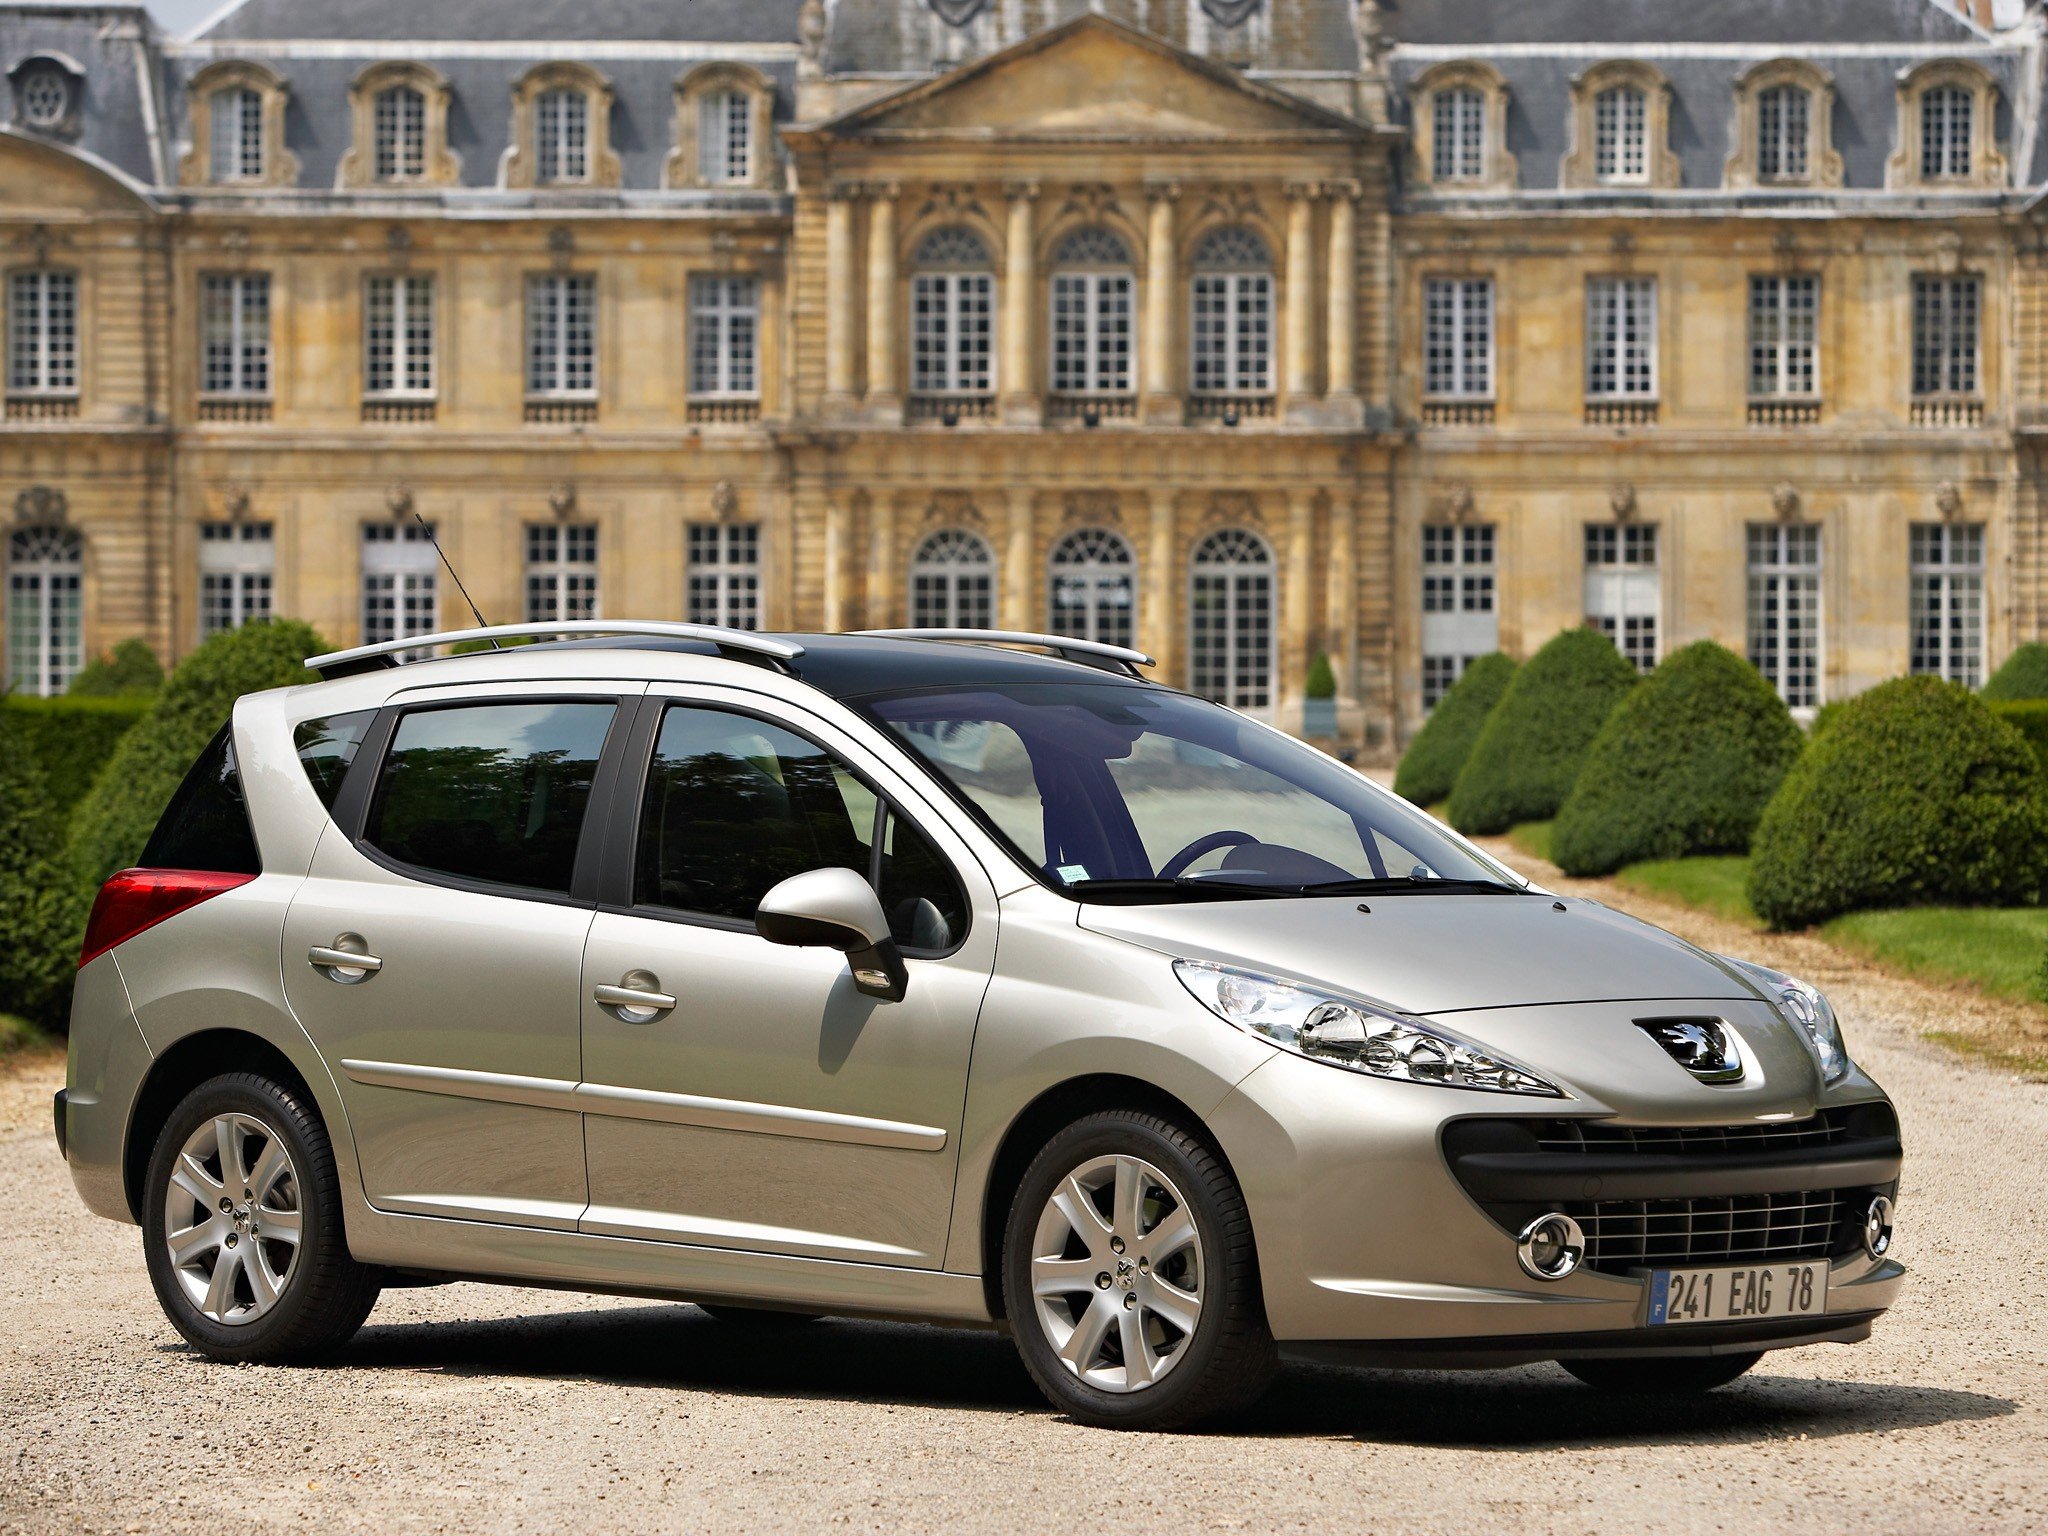 Peugeot 207 Sw 1.6 120 Km 2007 – Szybkie Kombi Klasy B, Które Może Pełnić Rolę Auta Dla Młodej Rodziny – Francuskie.pl – Dziennik Motoryzacyjny